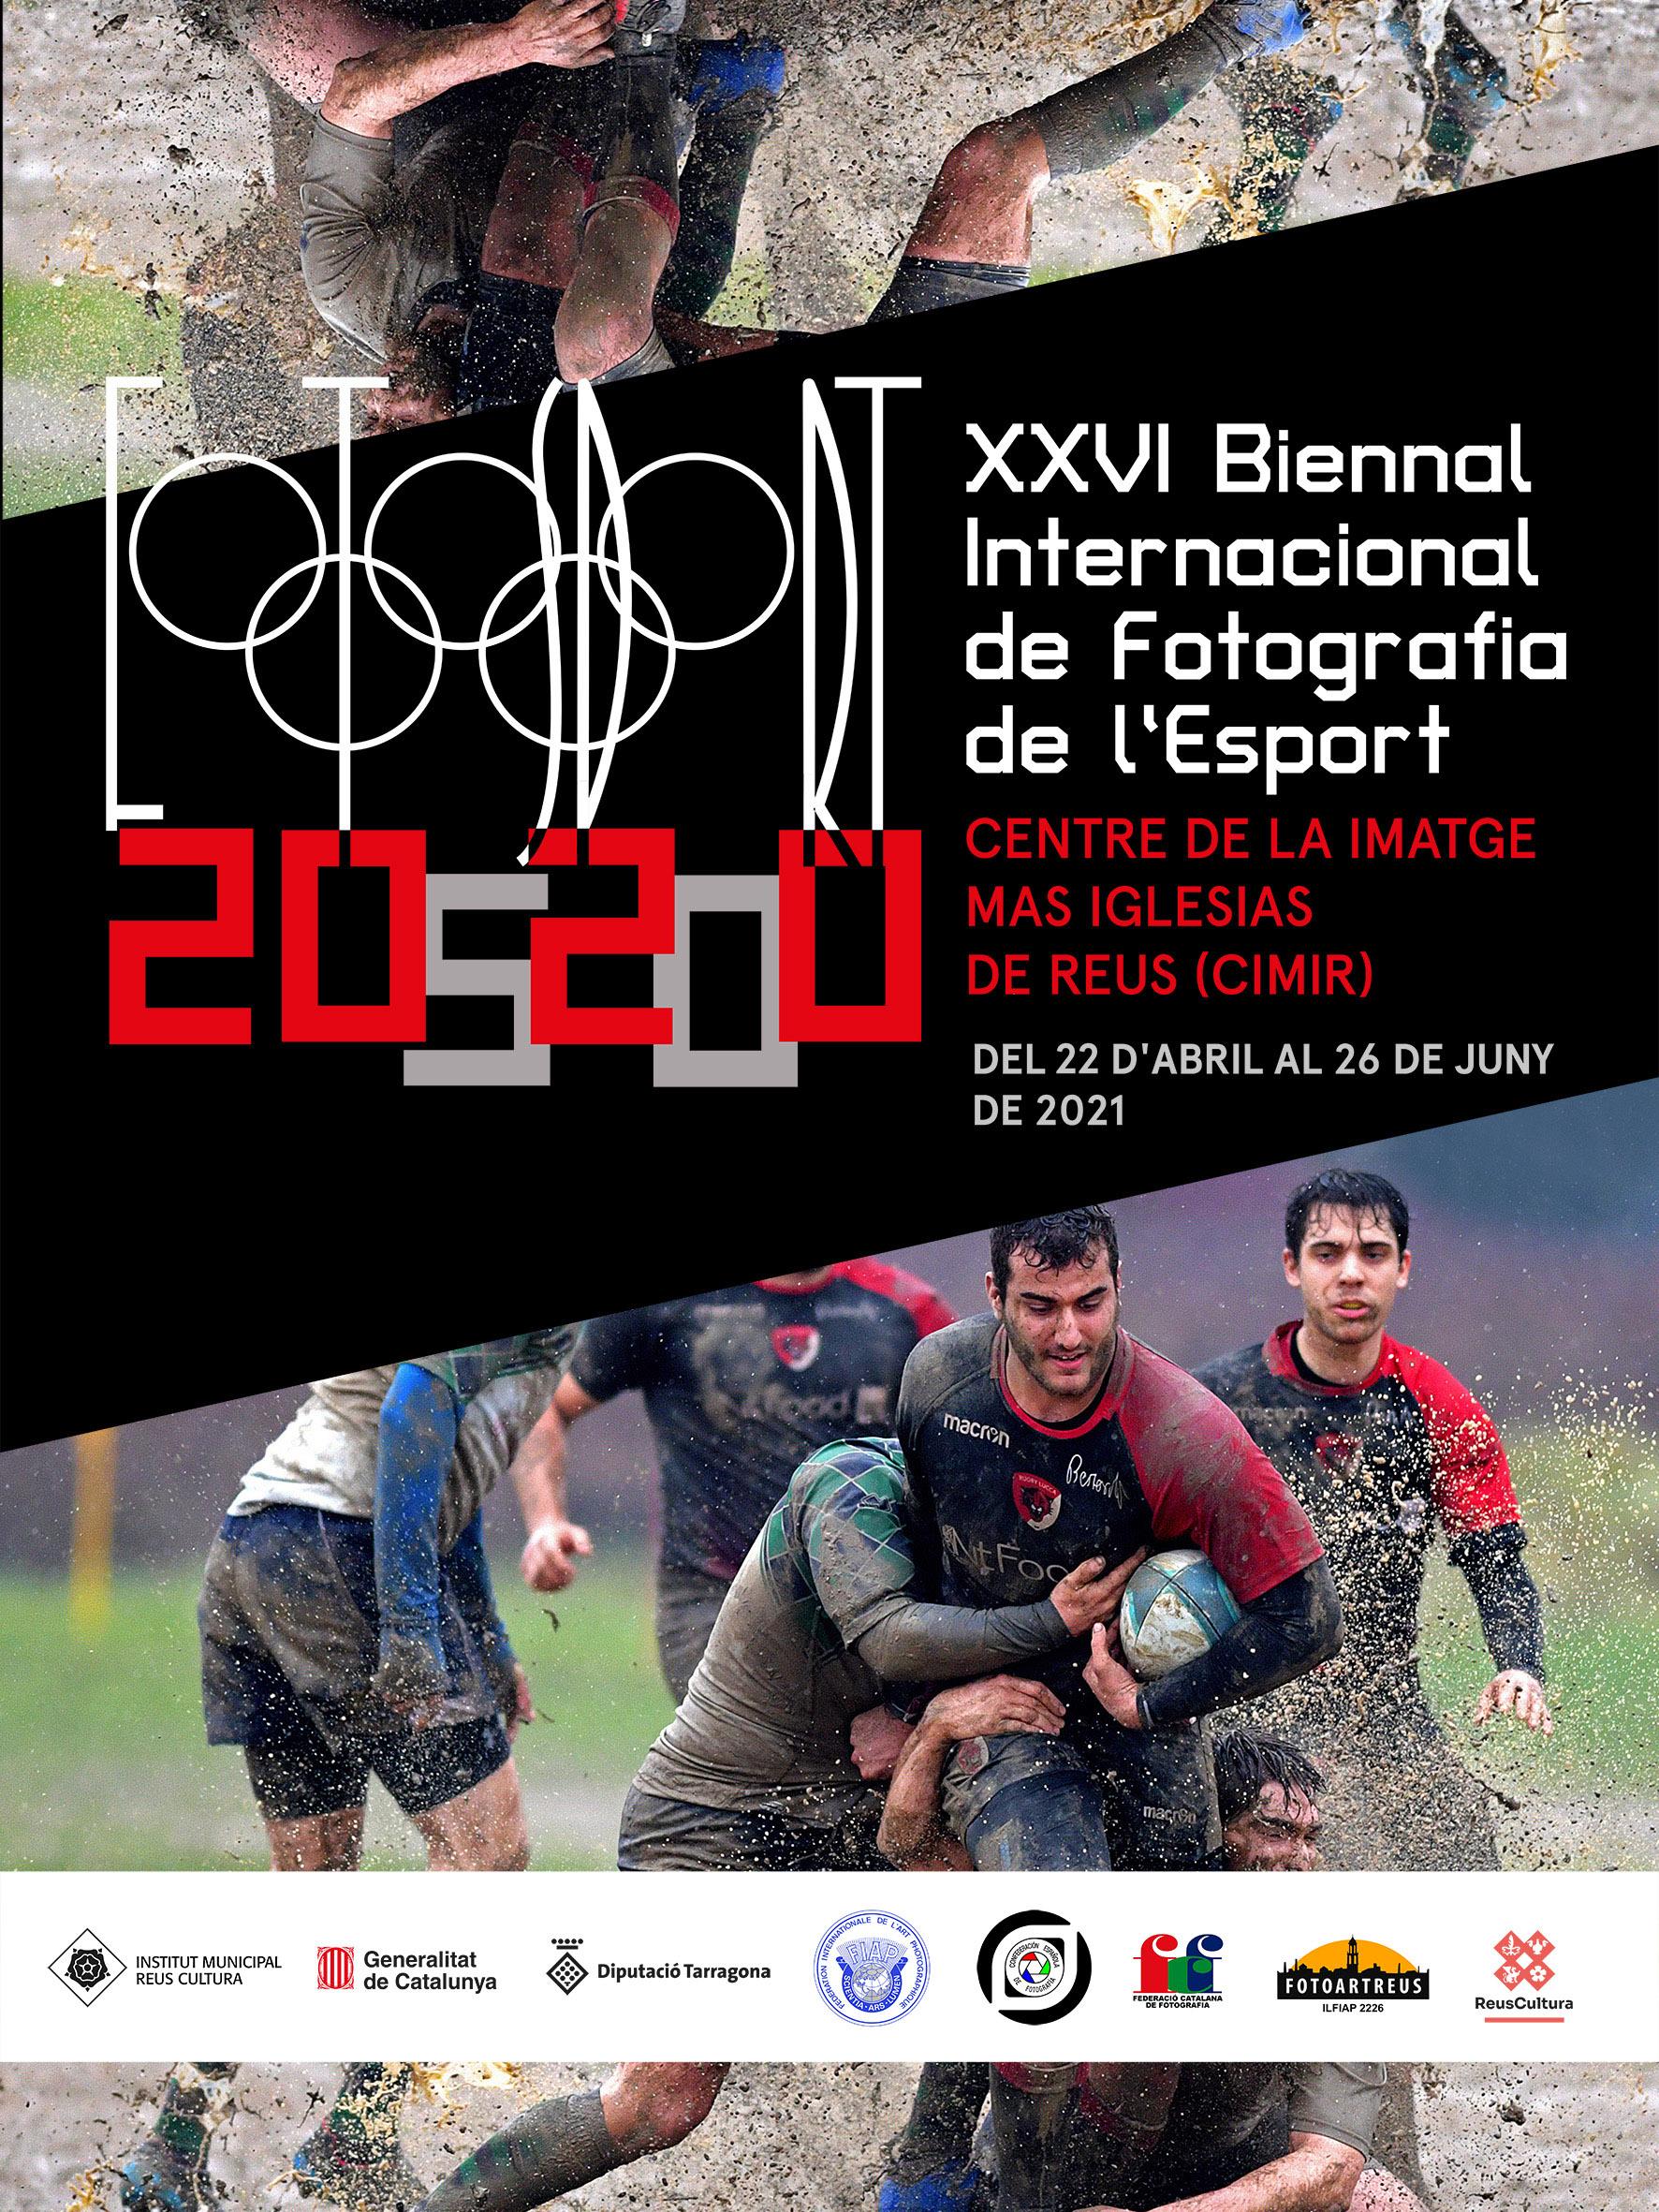 XXVI Biennal Internacional de Fotografia de l'Esport